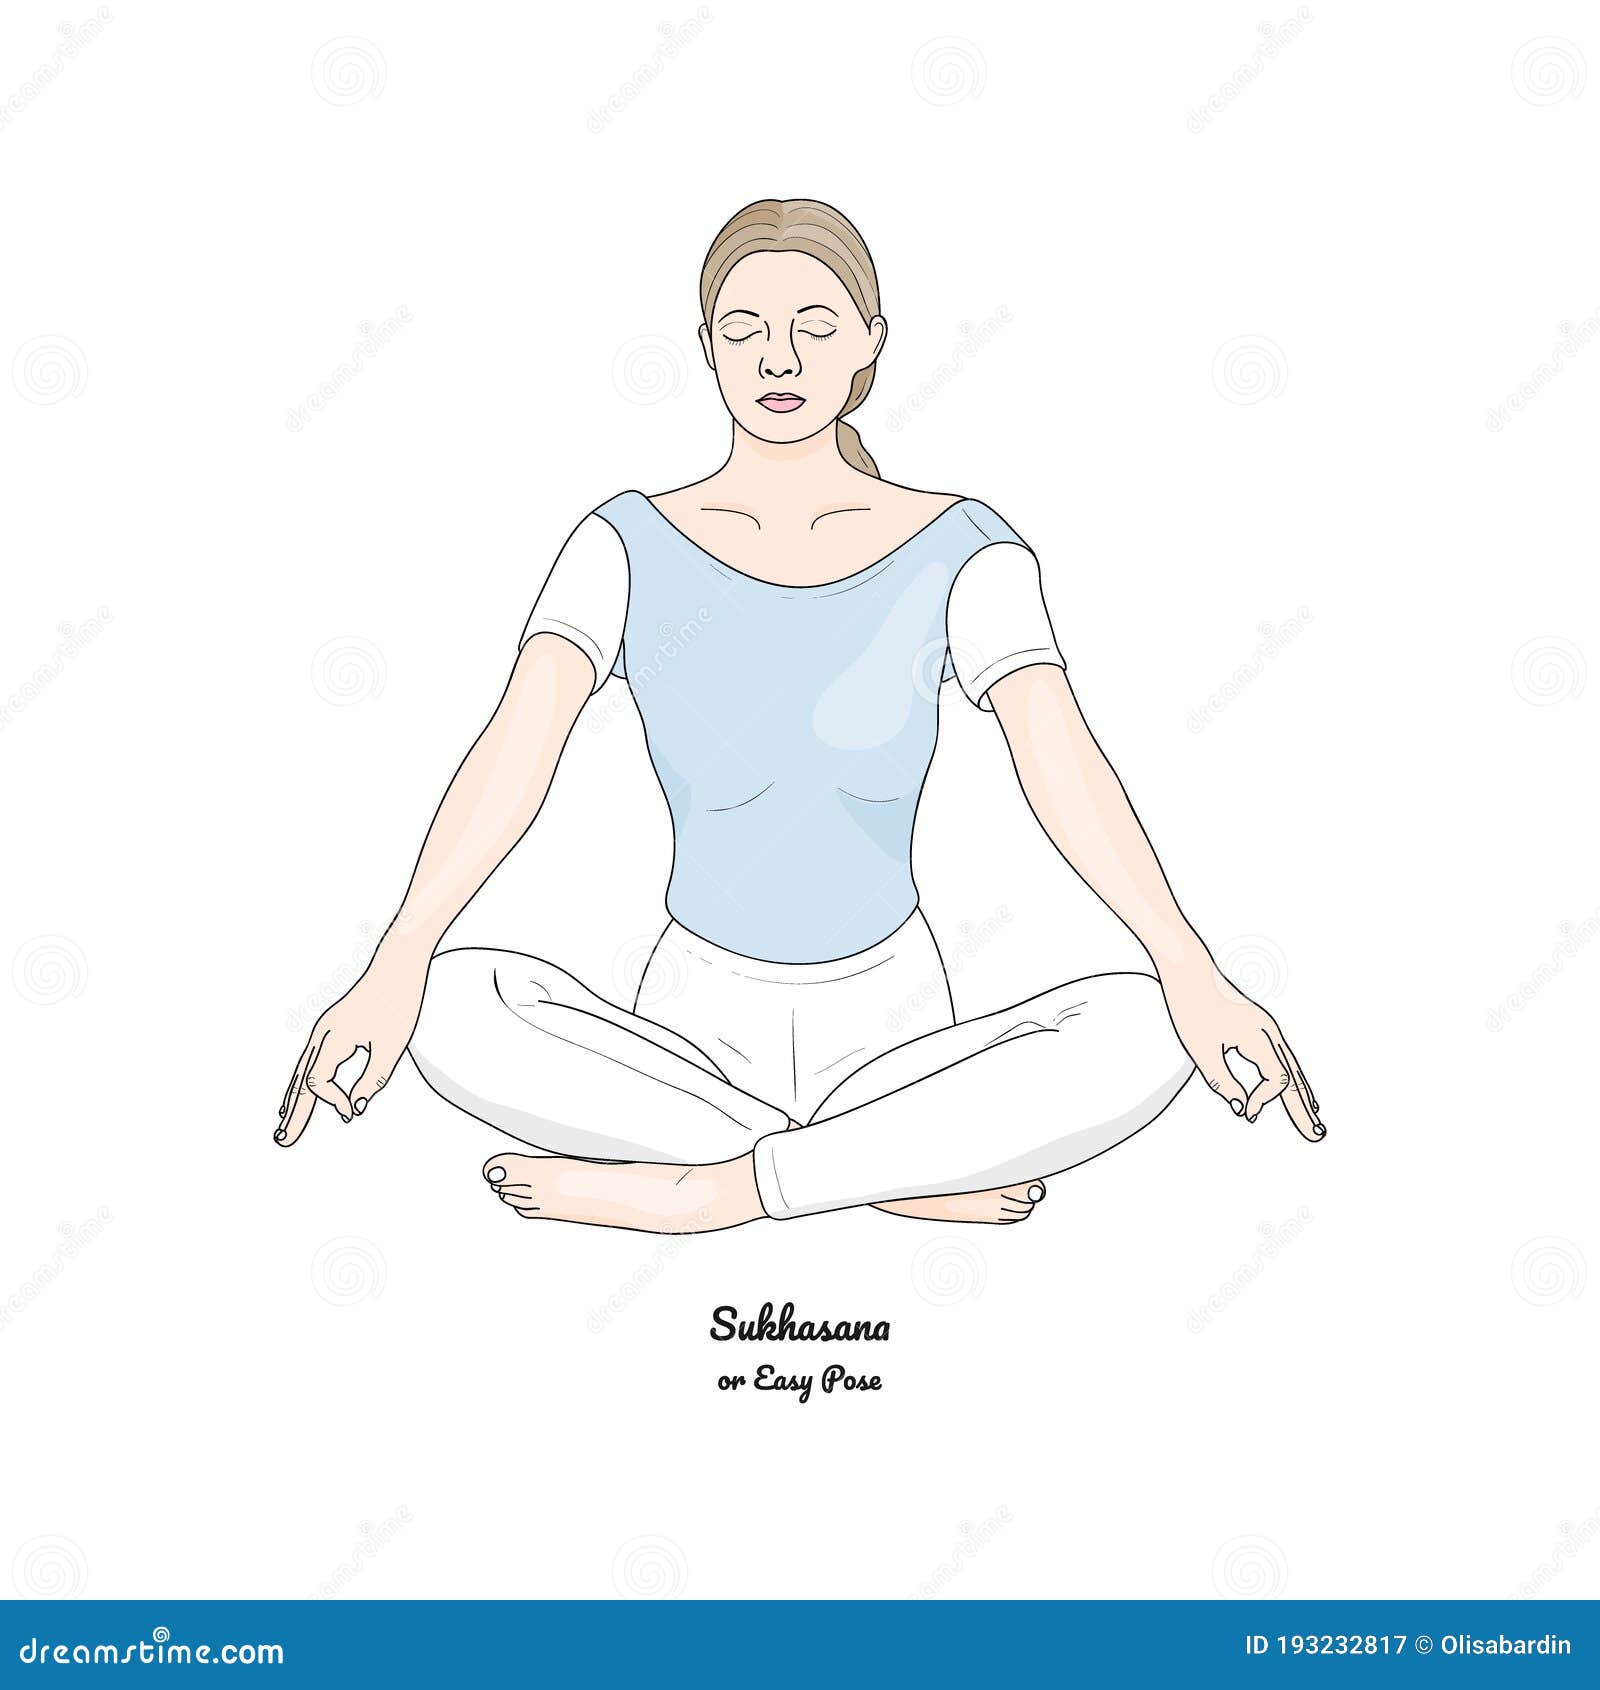 Sukhasana- Easy pose | Lotus Yoga